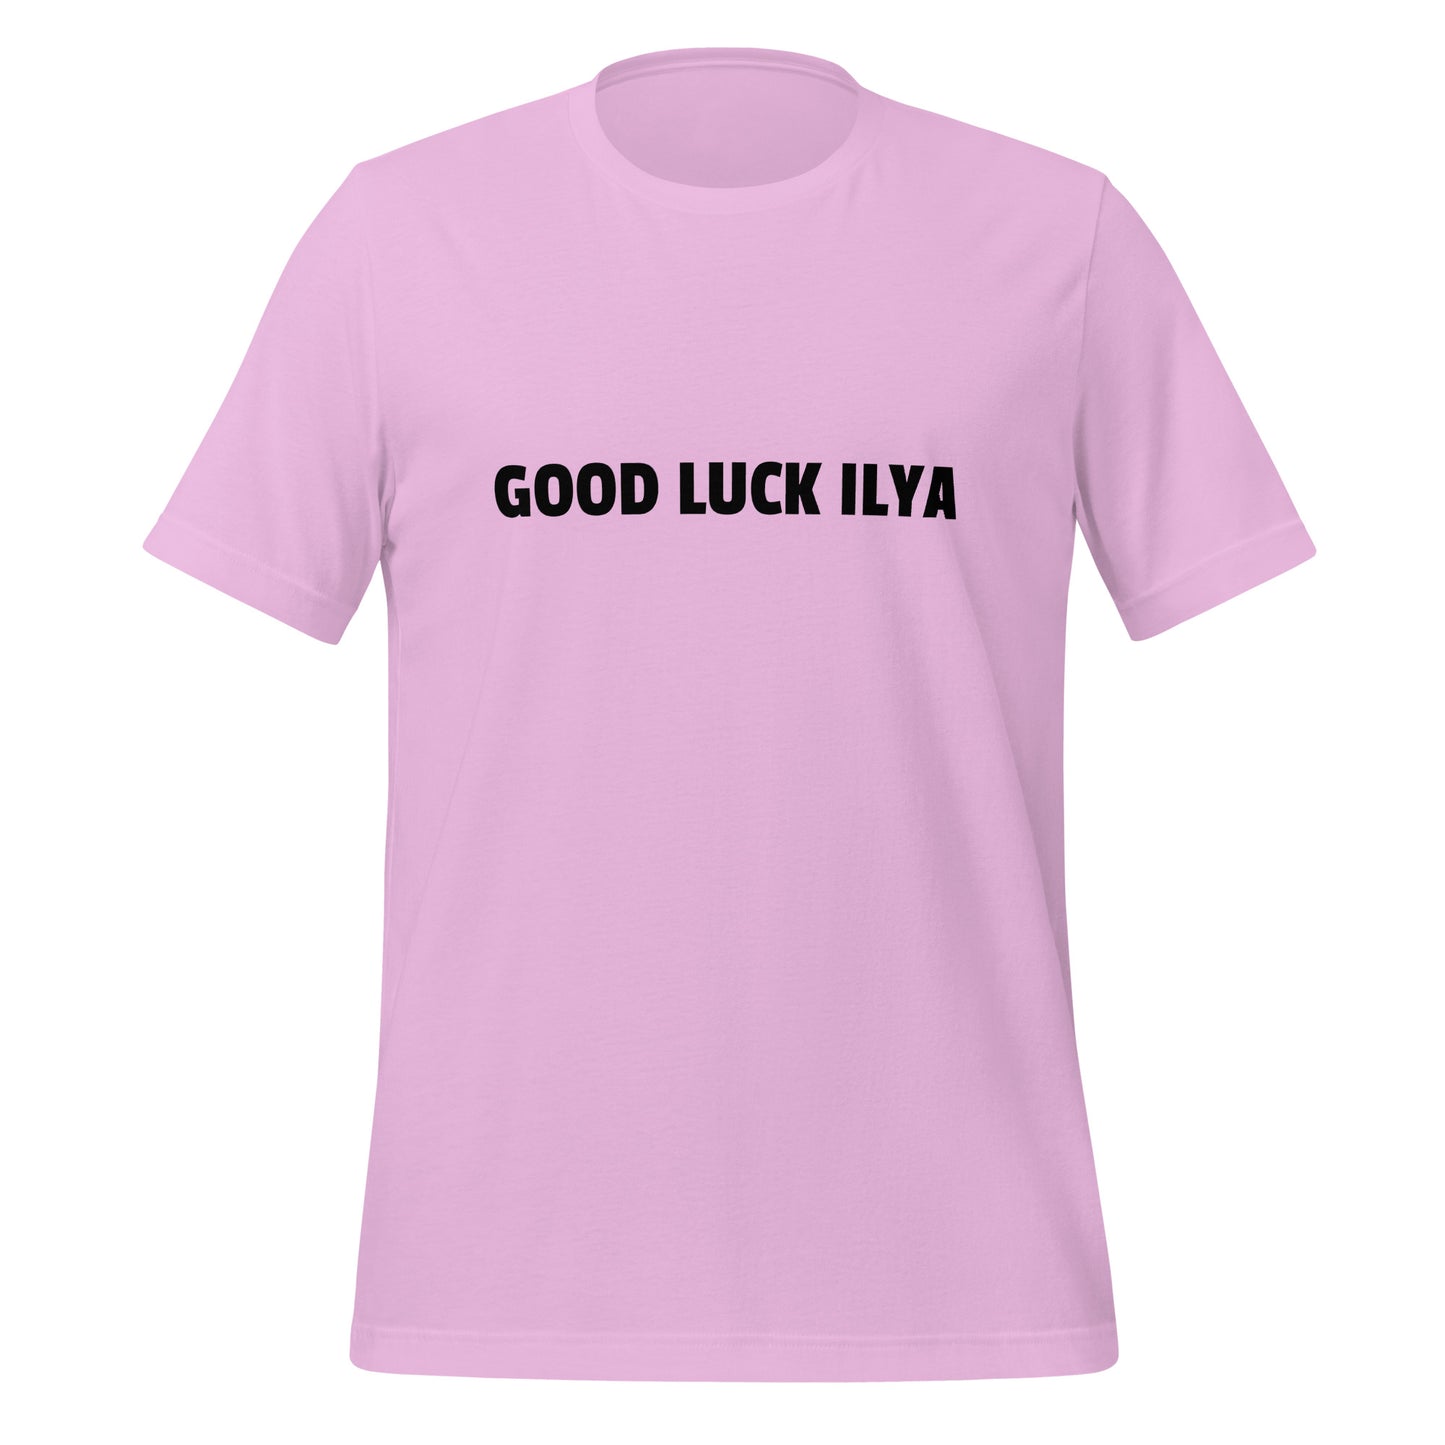 GOOD LUCK ILYA T - Shirt (unisex) - Lilac - AI Store